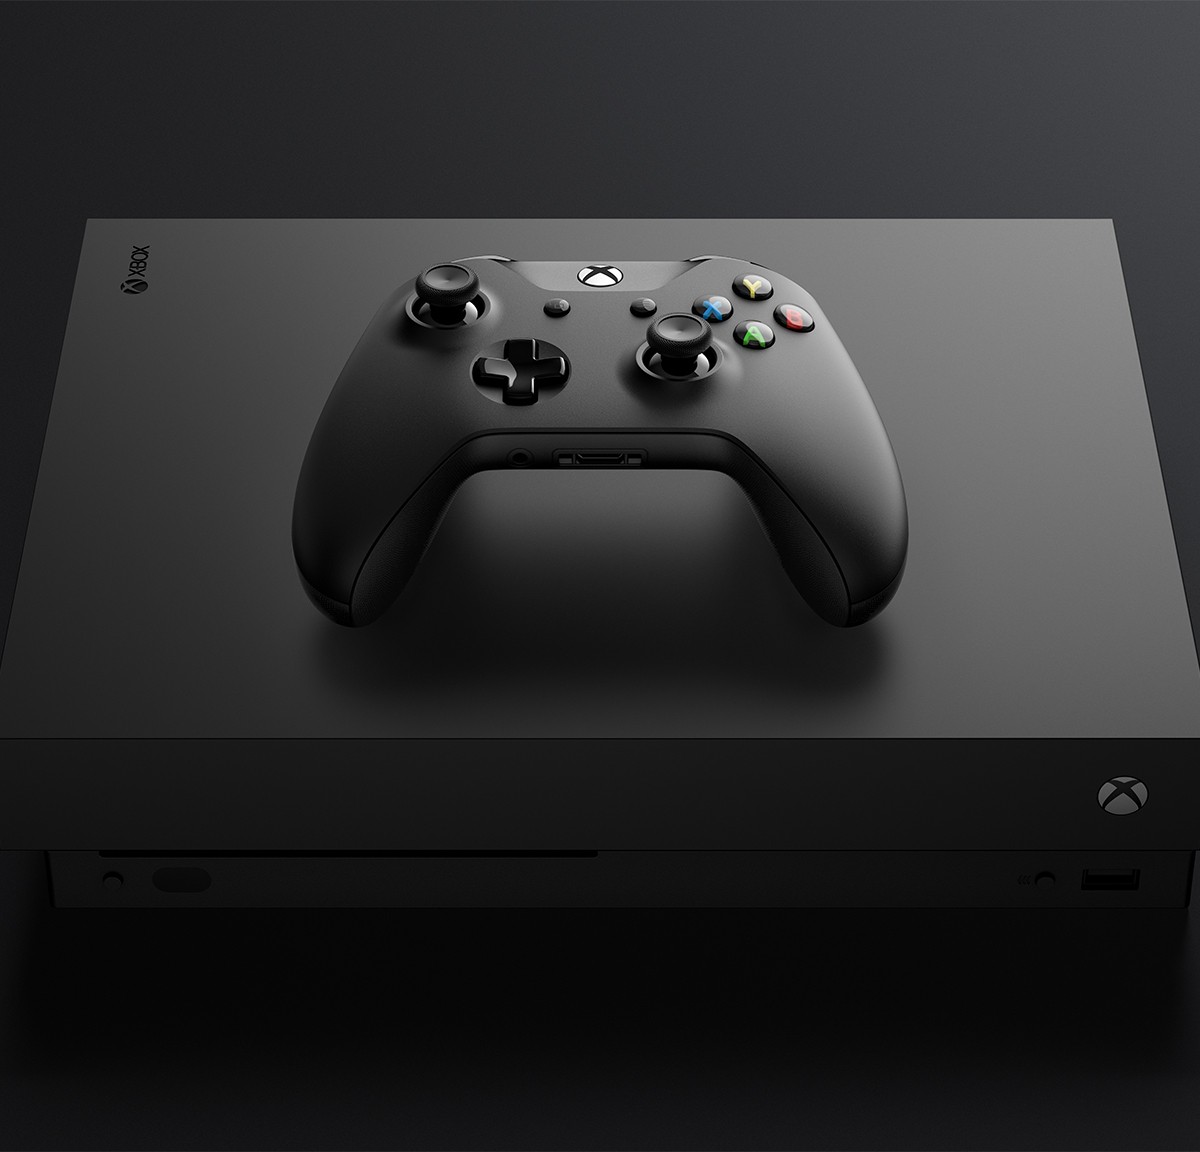 Xbox Game Pass confirma 13 jogos e um sucesso de crítica